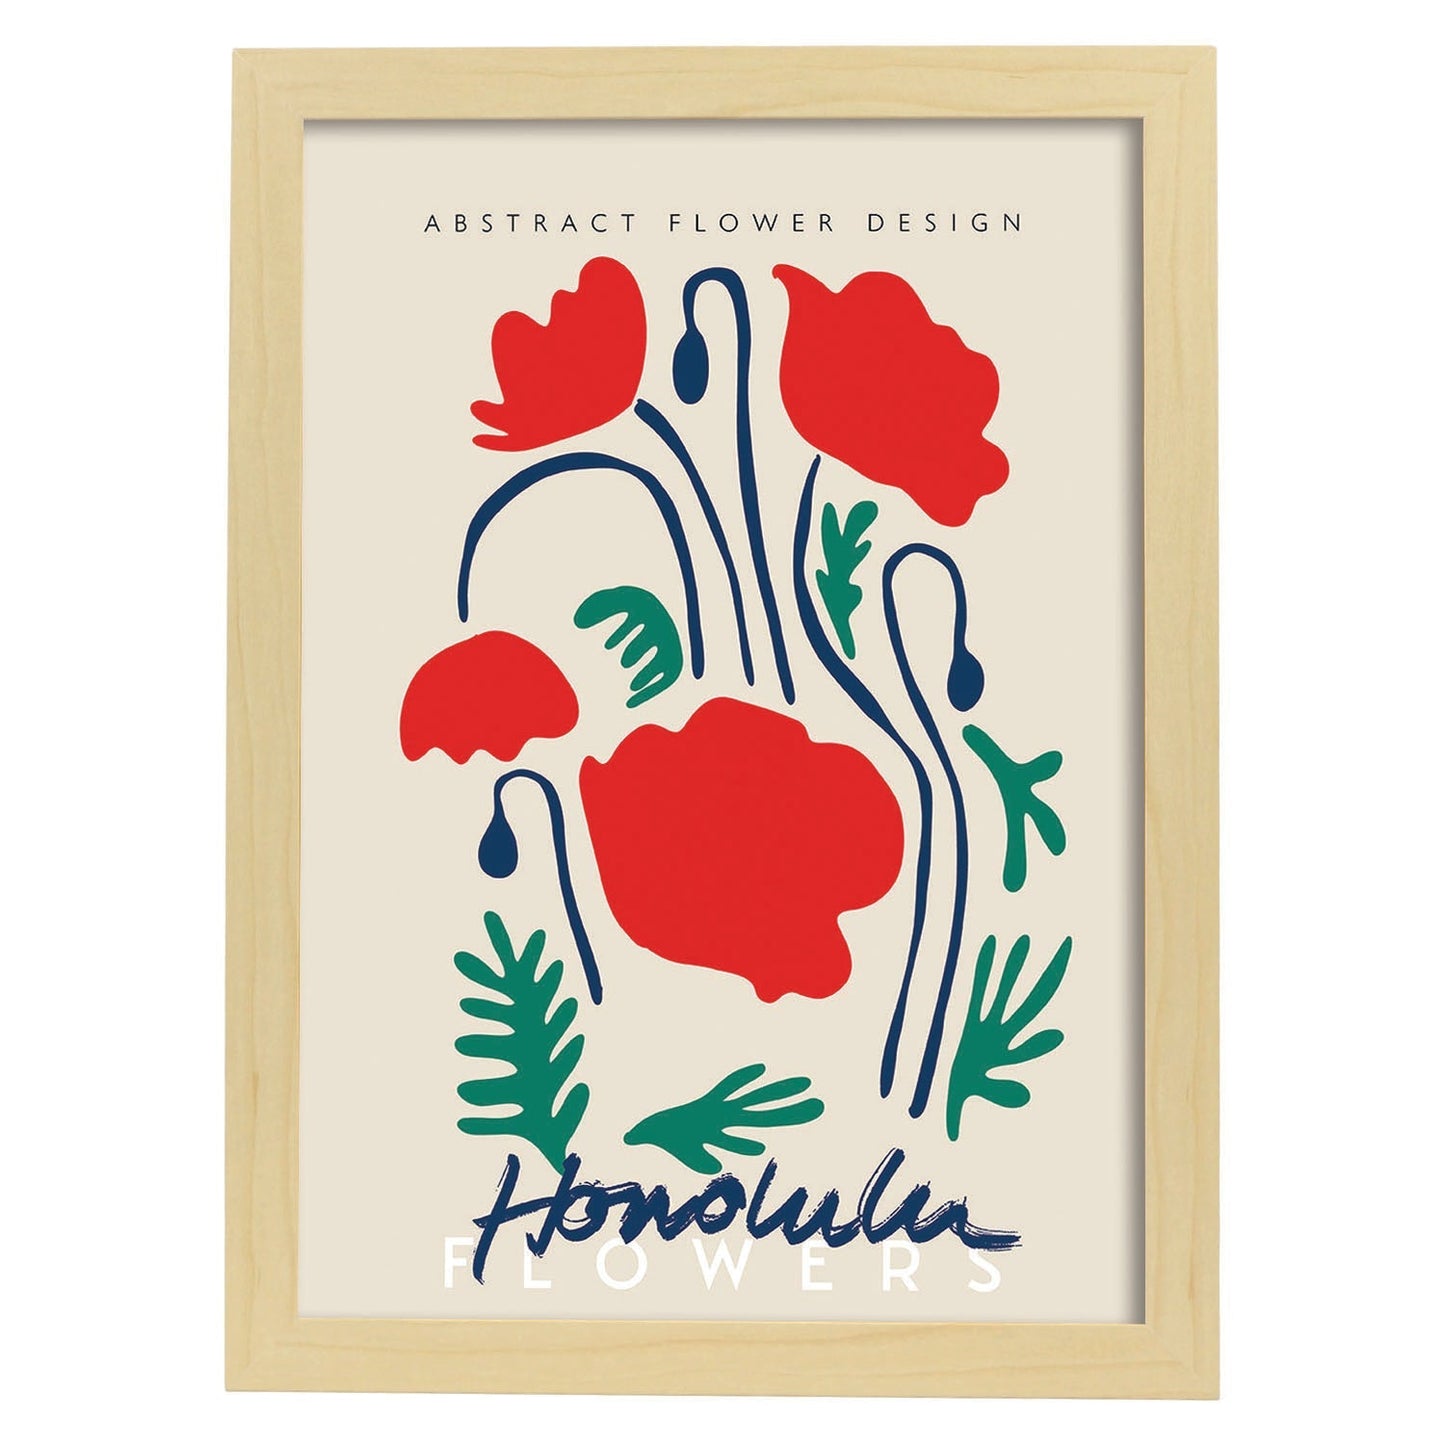 Lamina artistica decorativa con ilustración de Diseño floral abstracto Honolulu-Artwork-Nacnic-A4-Marco Madera clara-Nacnic Estudio SL